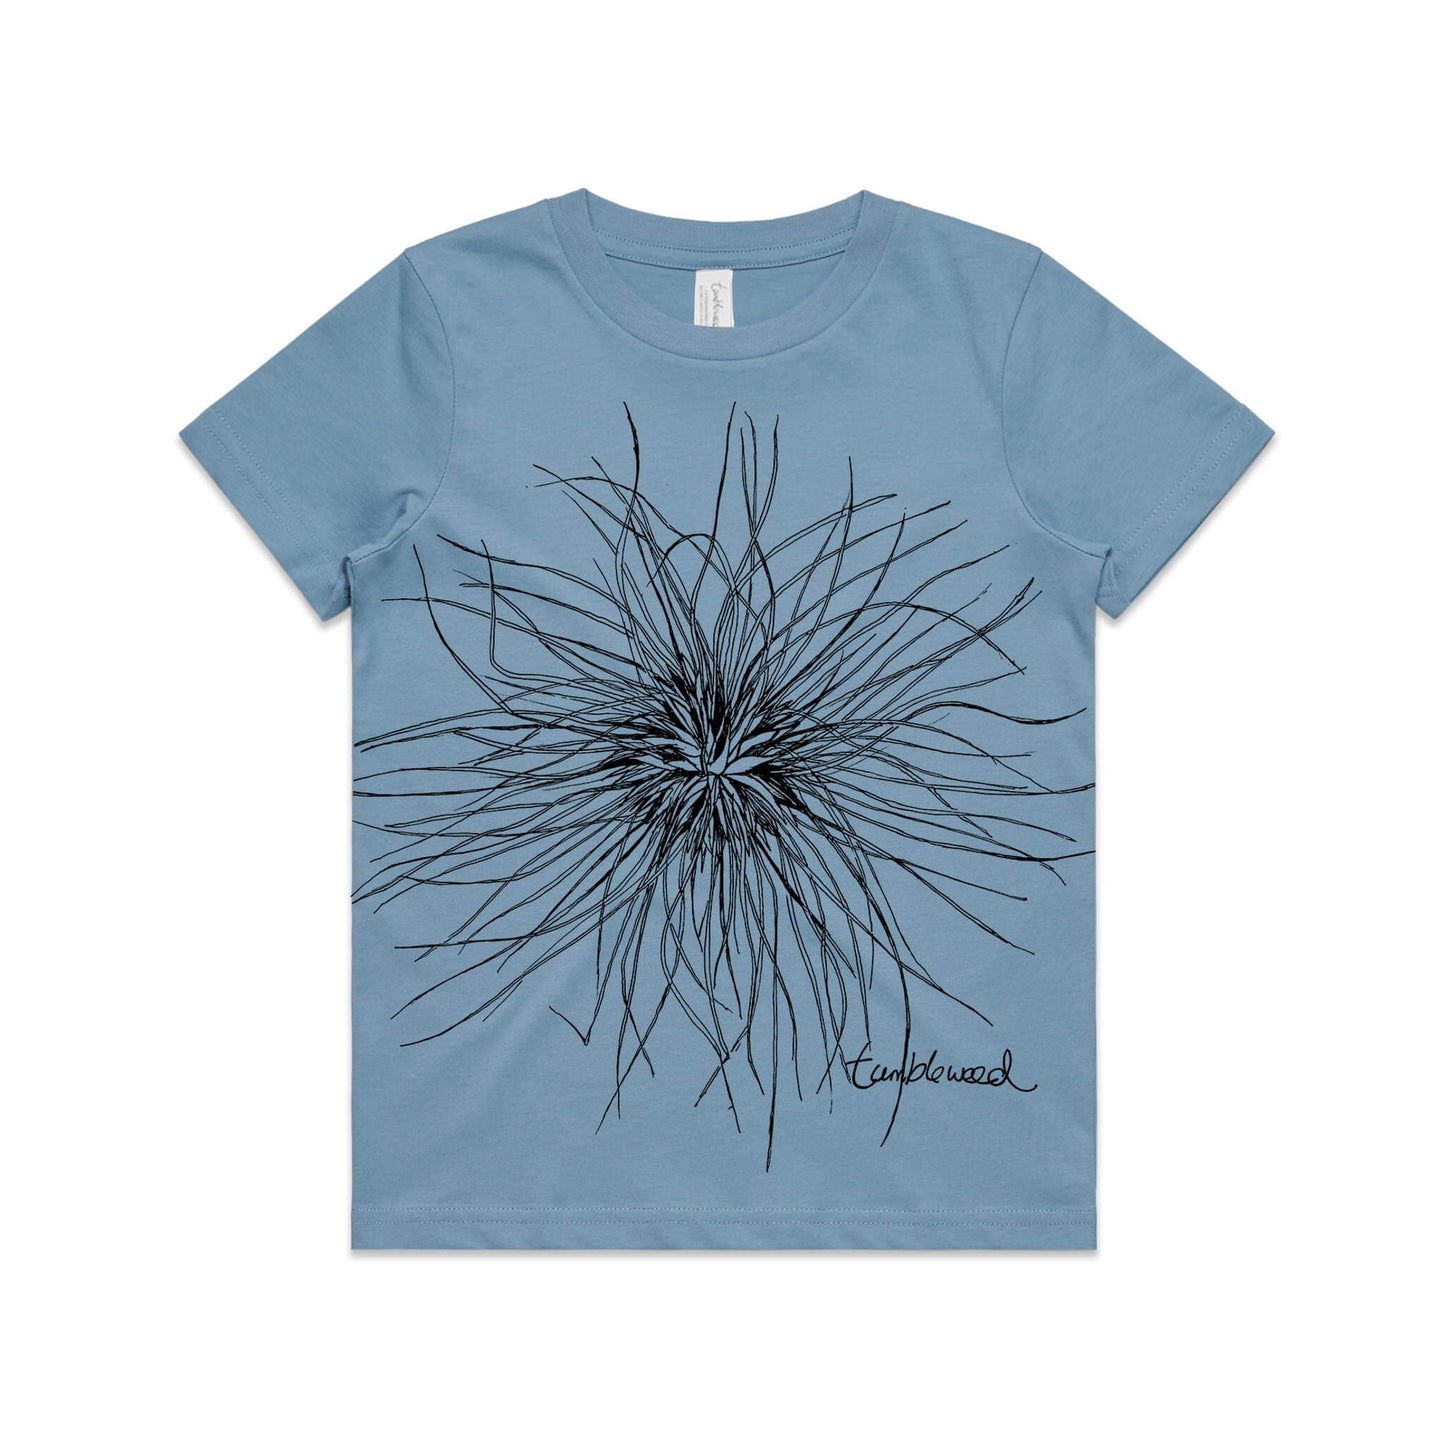 Tumbleweed Kids’ T-shirt